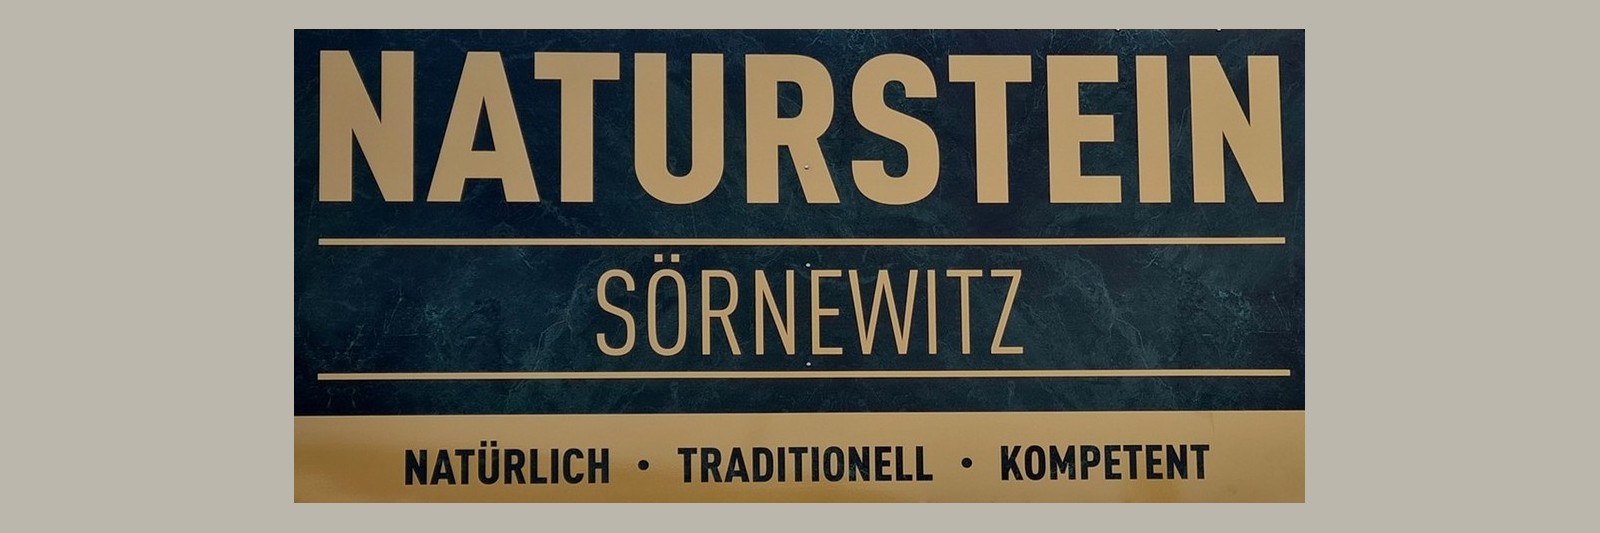 naturstein-soernewitz.de